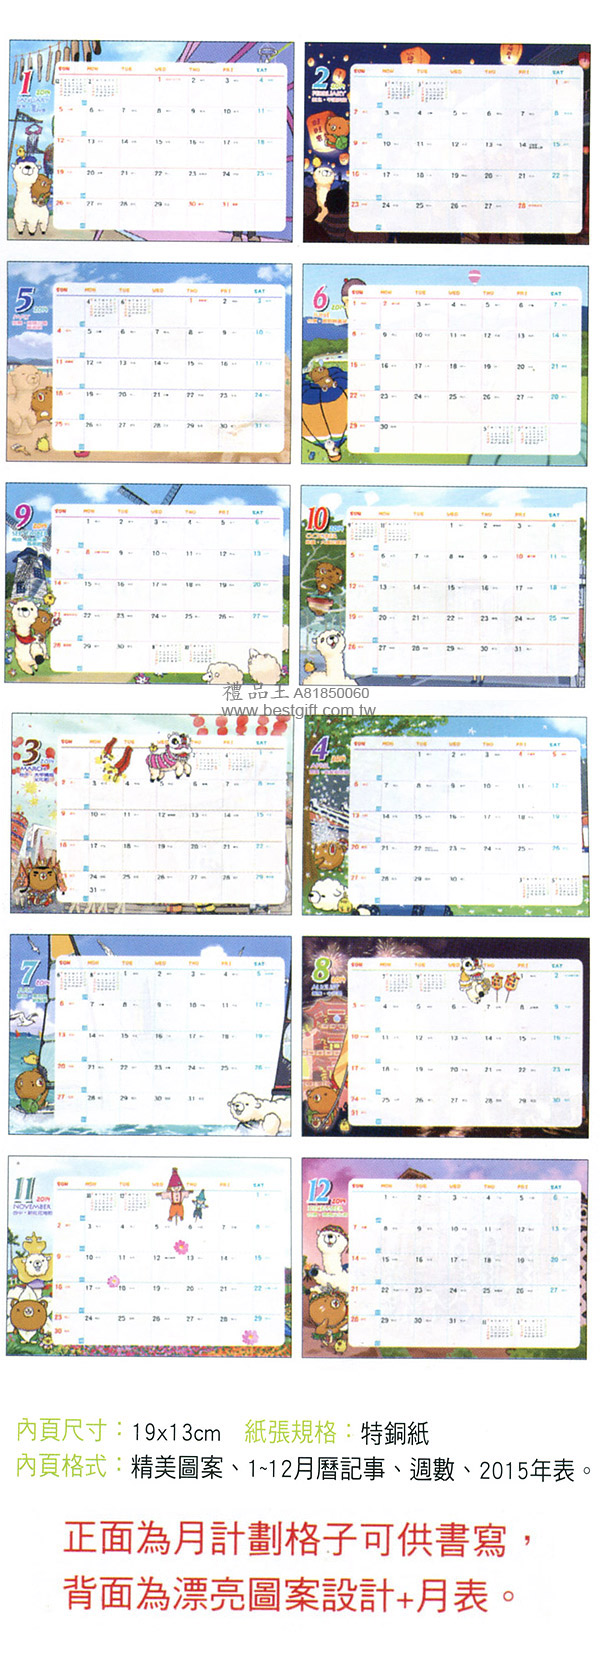 禮品王　工商日誌禮品網　提供各式工商日誌、萬用手冊、筆記本、年曆、月曆、日曆、萬年曆、桌曆、農民曆、行事曆、年曆掛軸、三角桌曆、三角檯曆、禮品、贈品、紀念品。